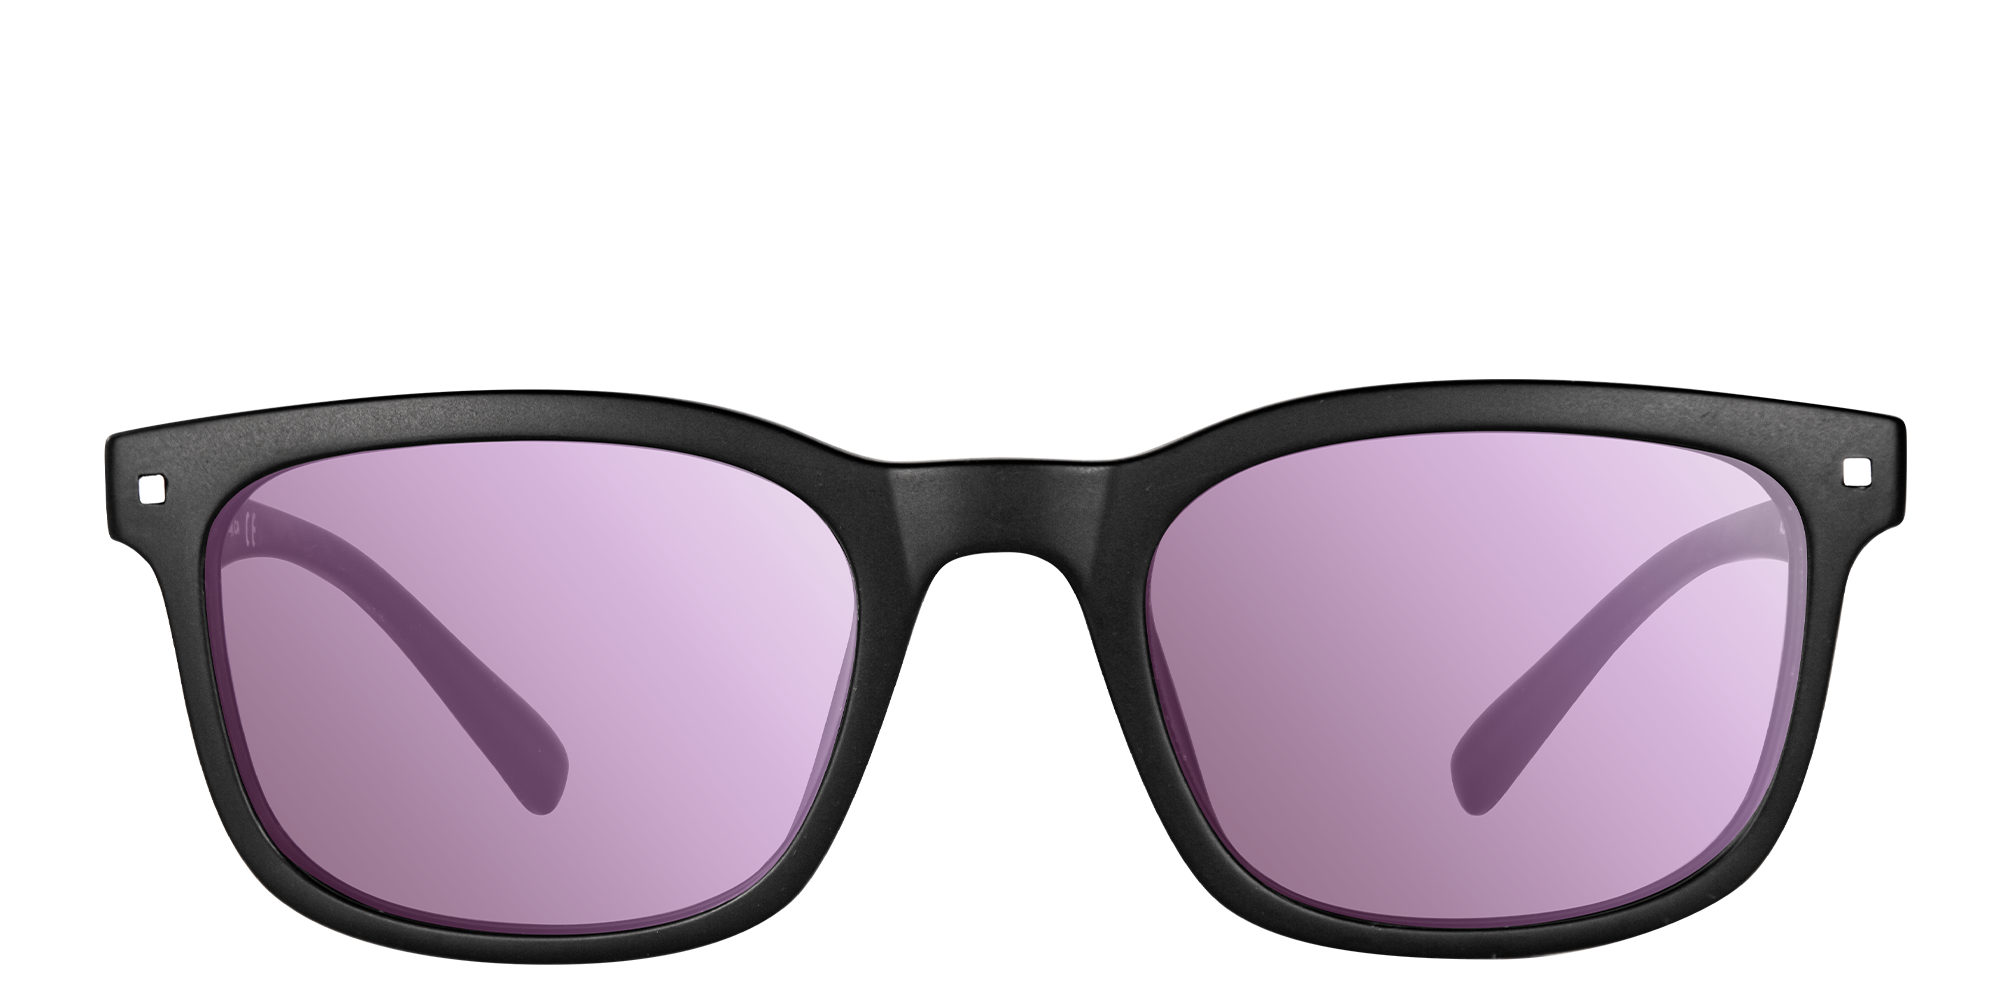 EnChroma® Color Blind Glasses